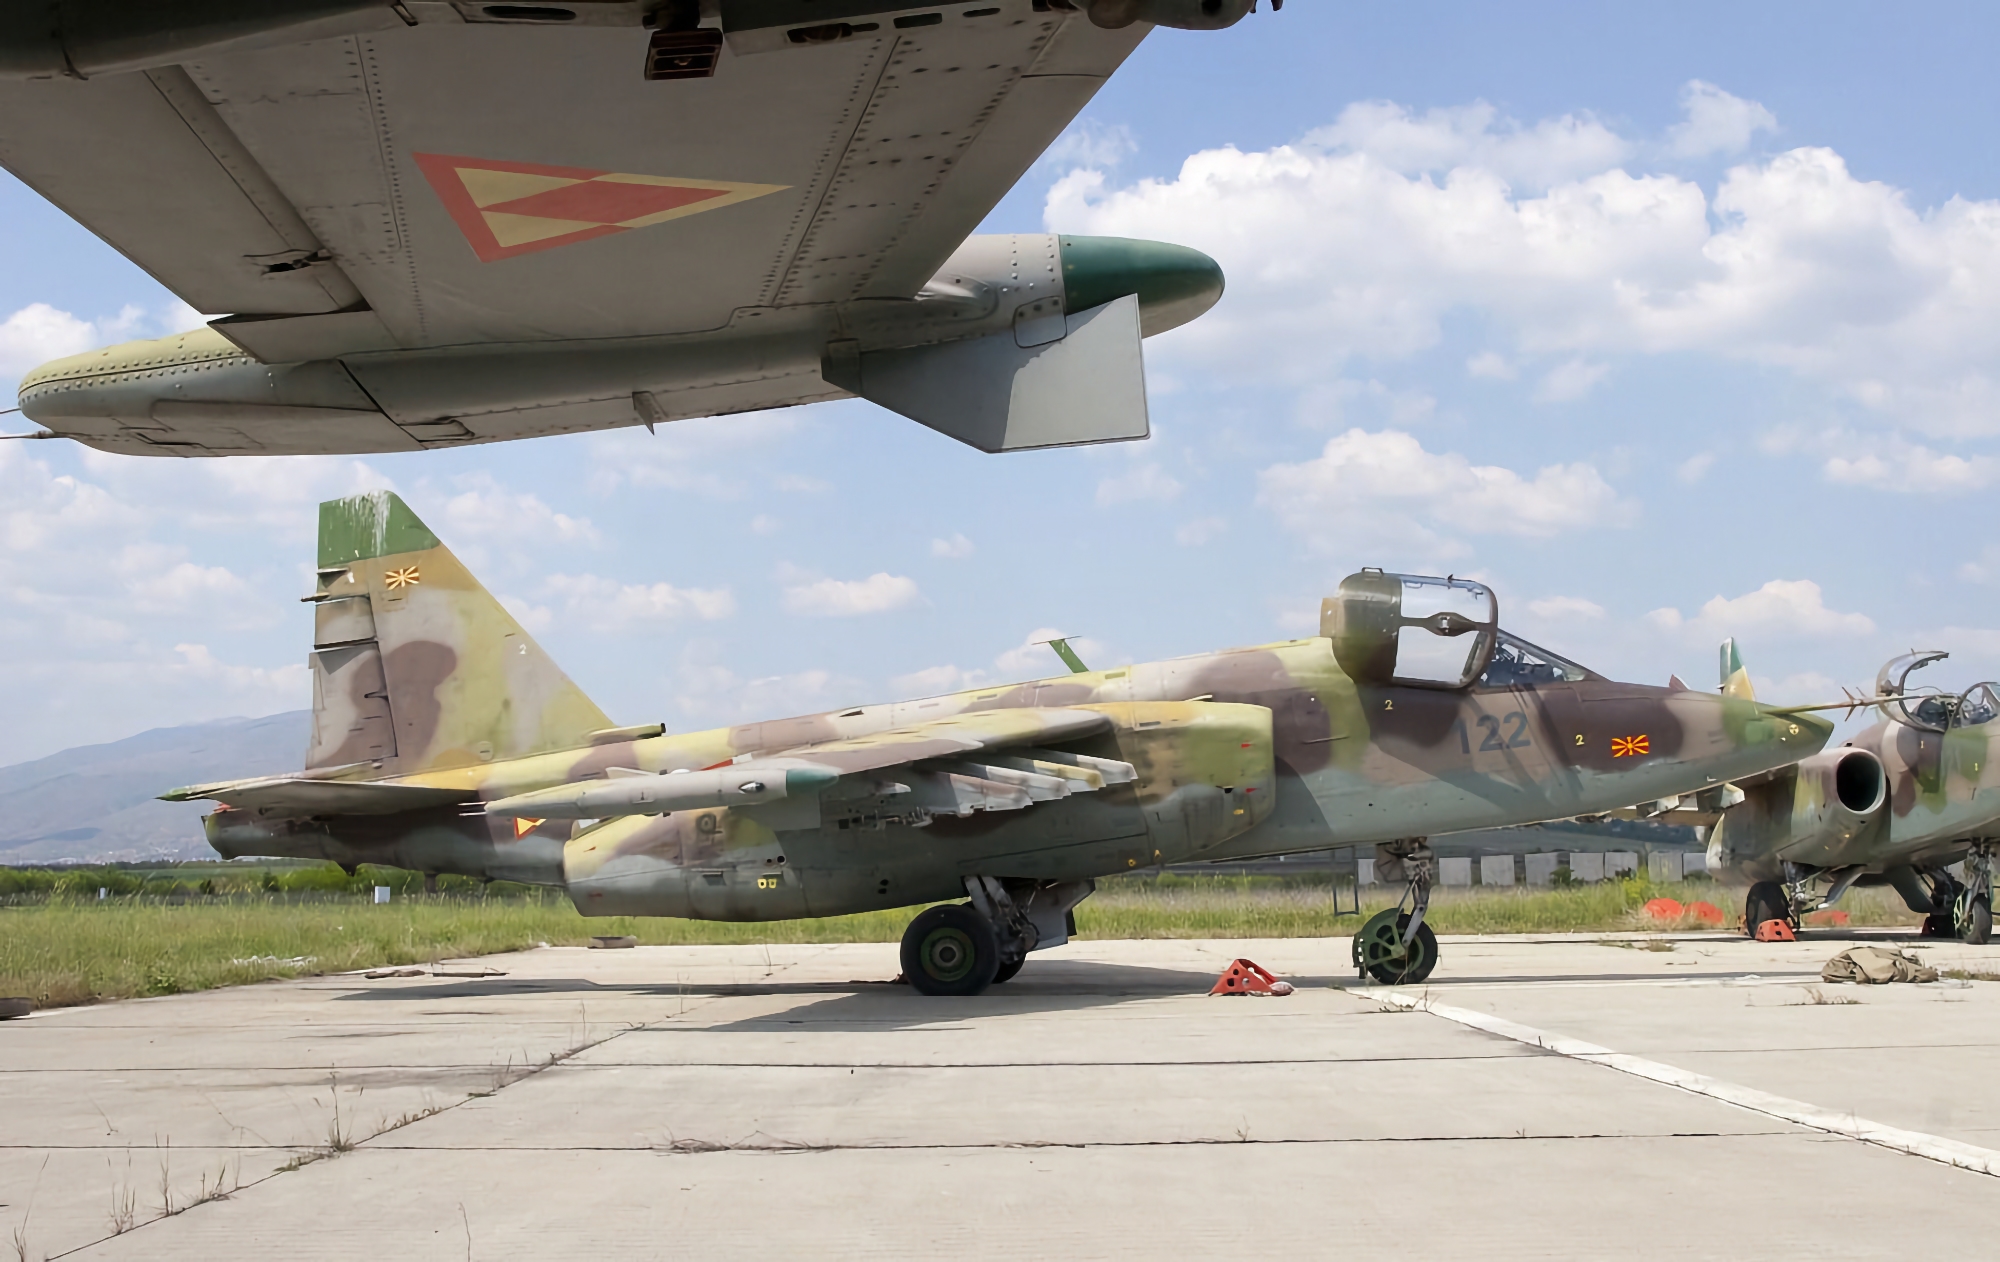 Macedonia Północna potwierdza przekazanie Ukrainie samolotu Su-25